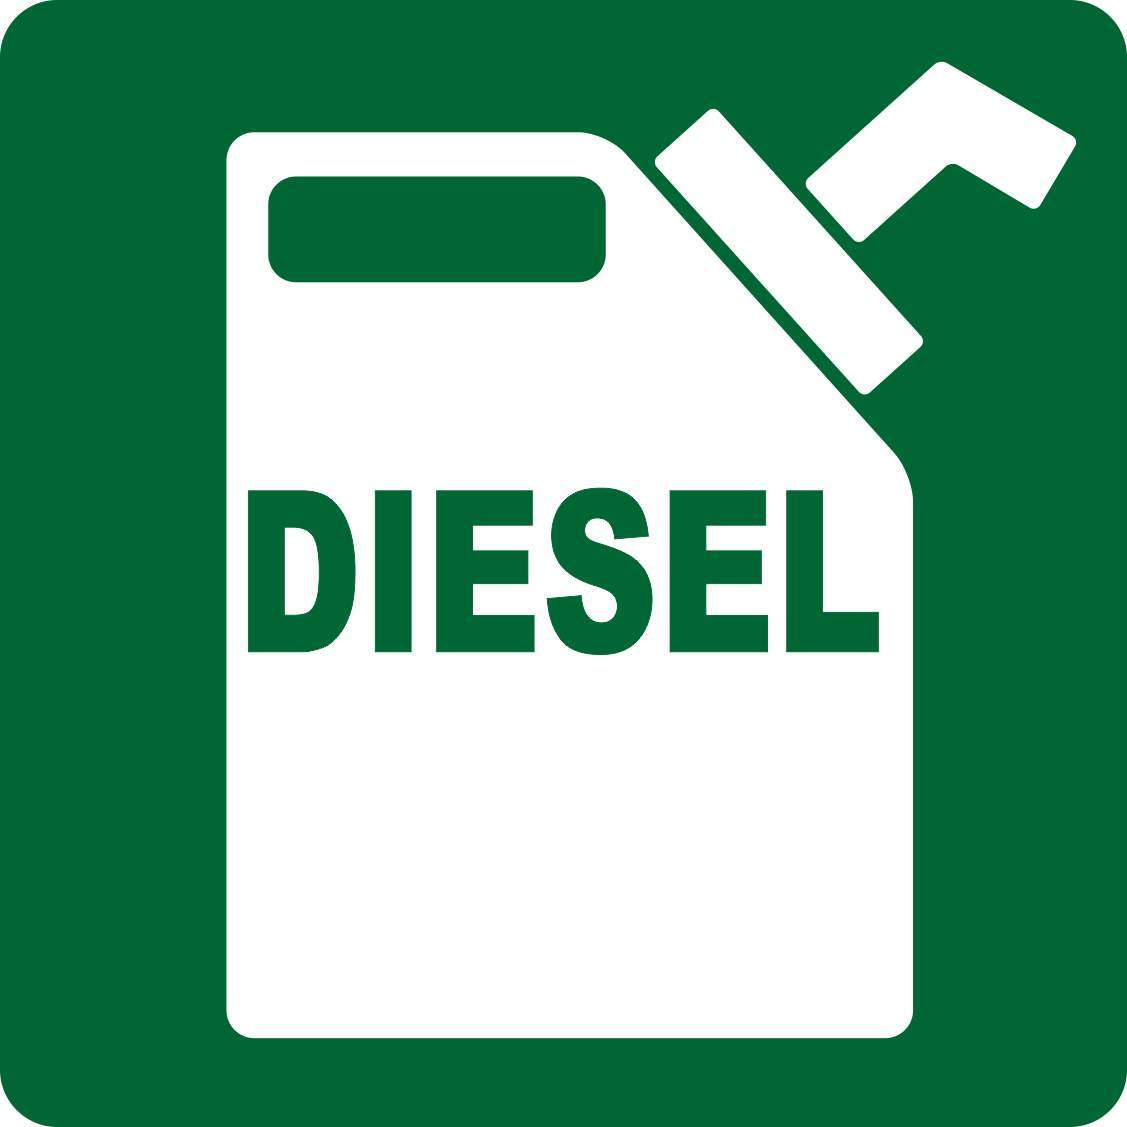 5in x 5in Diesel Sticker Vinyl Decals Stickers Fuel Safety Truck Decal